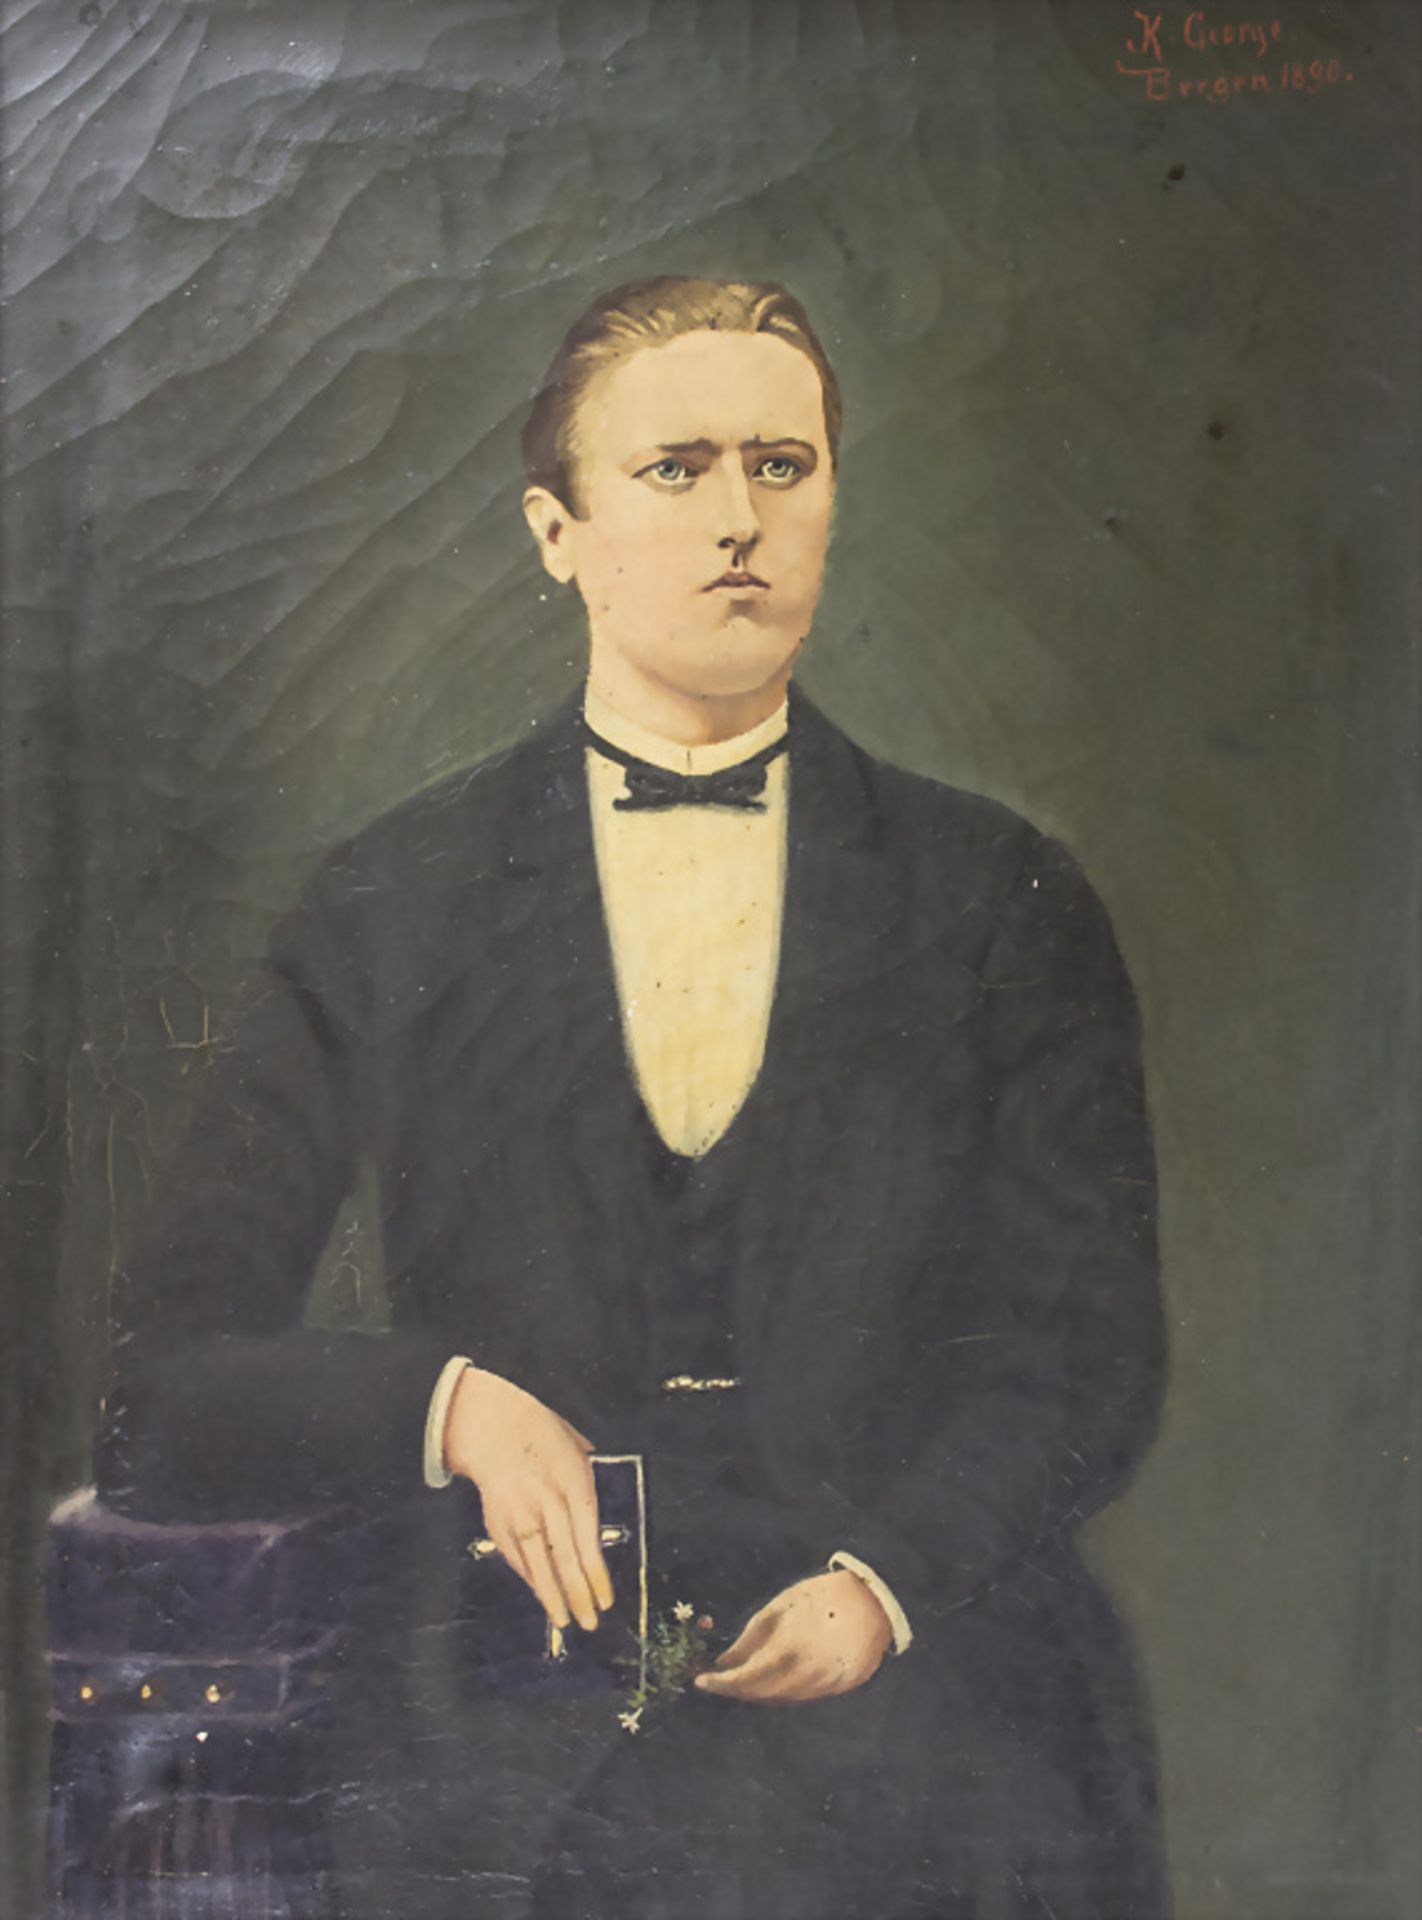 K. George, 'Porträt eines Bräutigams' / 'Portrait of a groom', Bergen, 1890